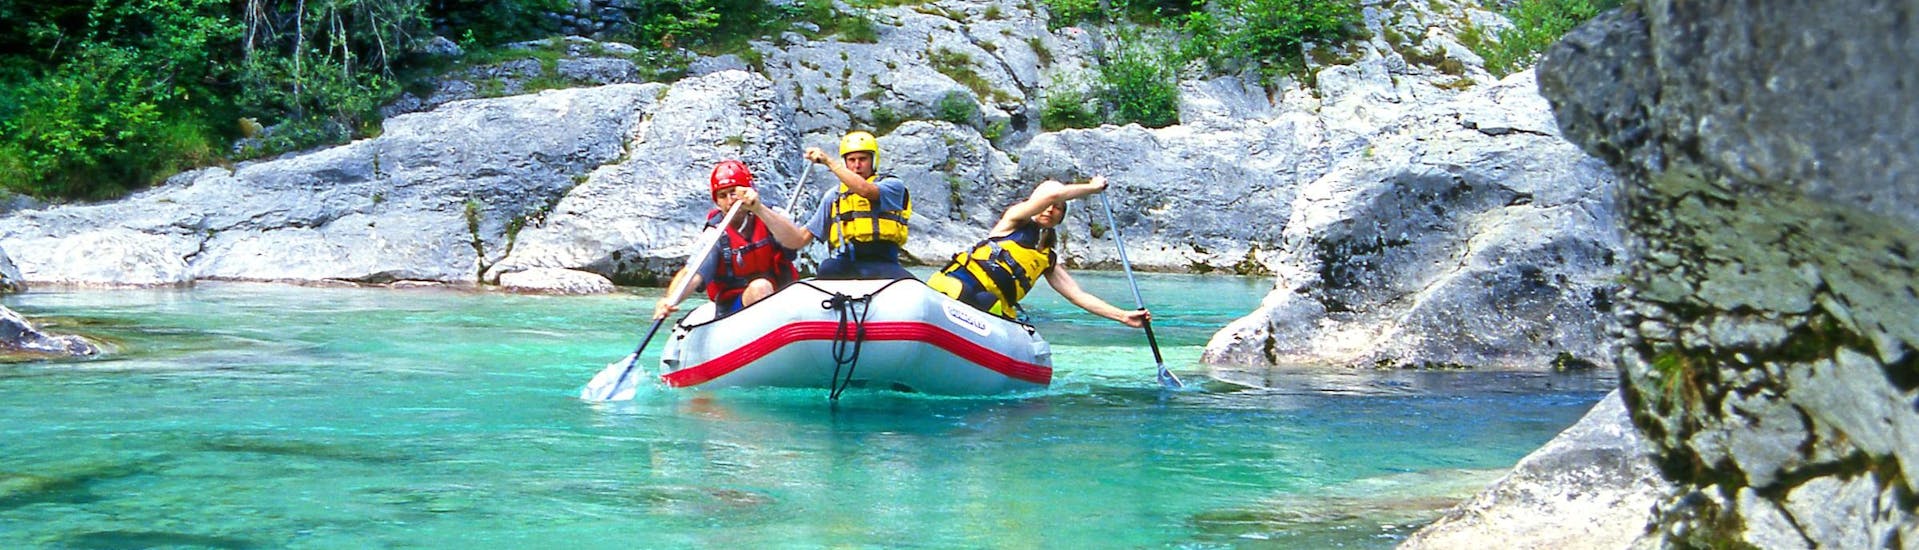 Soča-vallei: Een groep jongeren geniet van een wildwateravontuur in een van de hotspots voor rafting en canyoning.